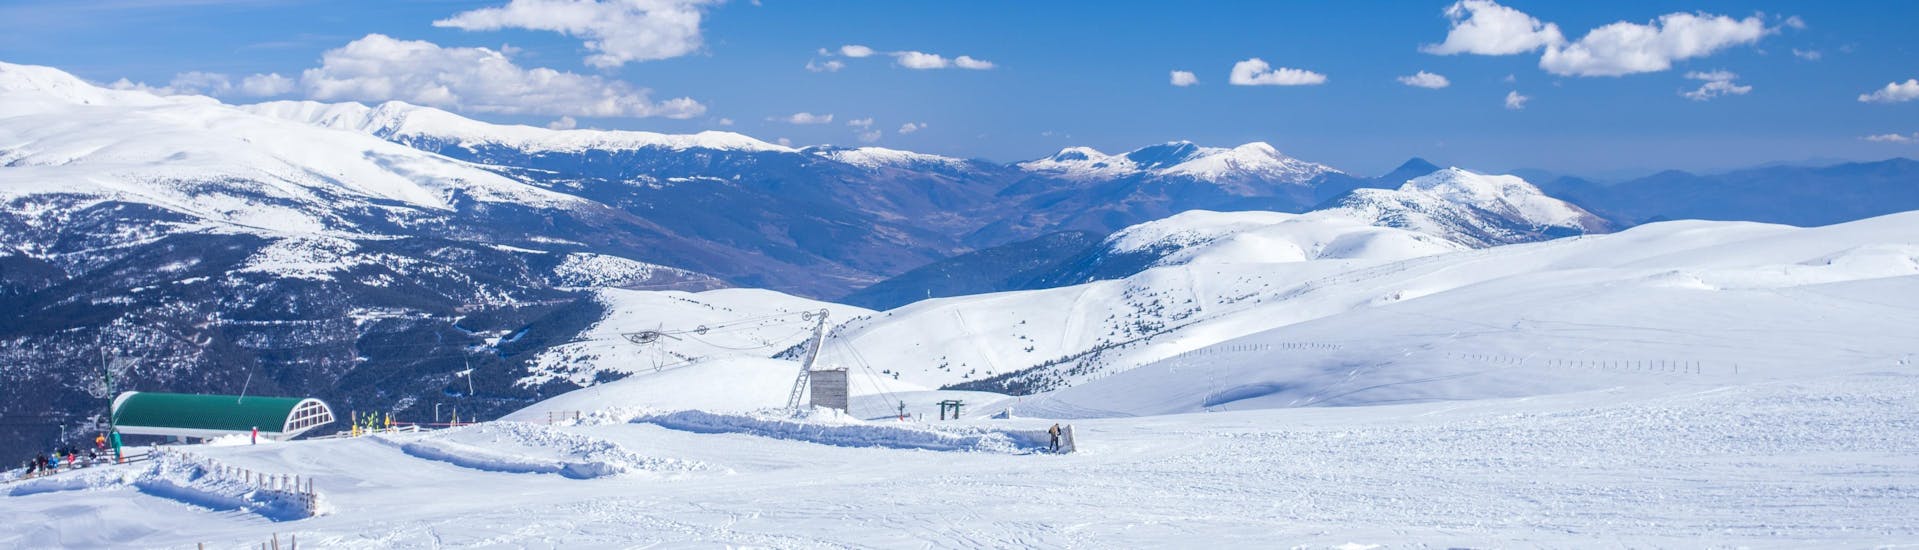 Ein Bild von den Pisten von La Molina, wo man Skifahren mit dem Skikurs gehen kann.